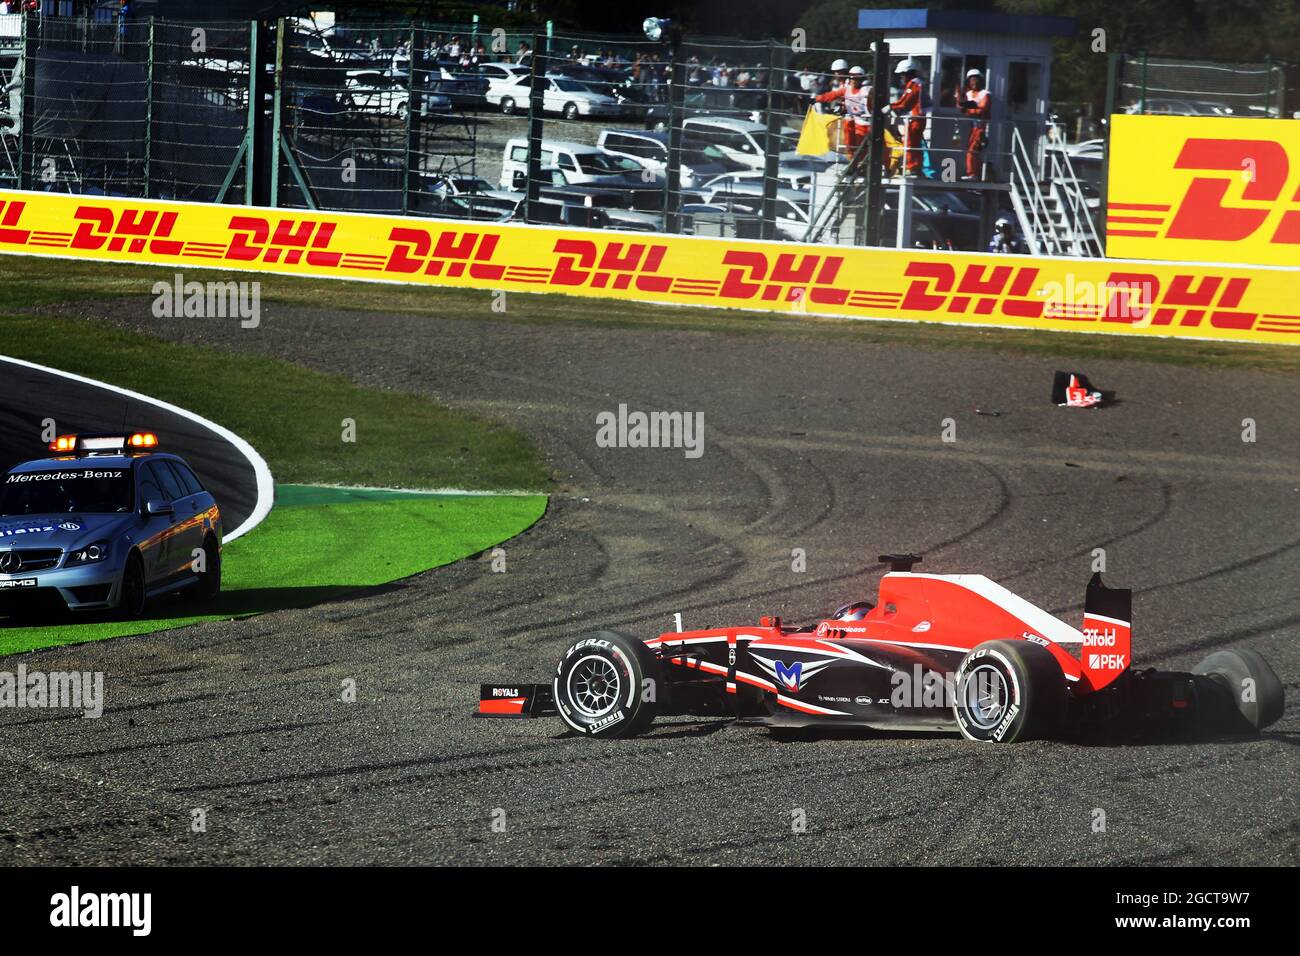 Jules Bianchi (FRA) Marussia F1 Team MR02 s'écrase au début de la course. Grand Prix japonais, dimanche 13 octobre 2013. Suzuka, Japon. Banque D'Images